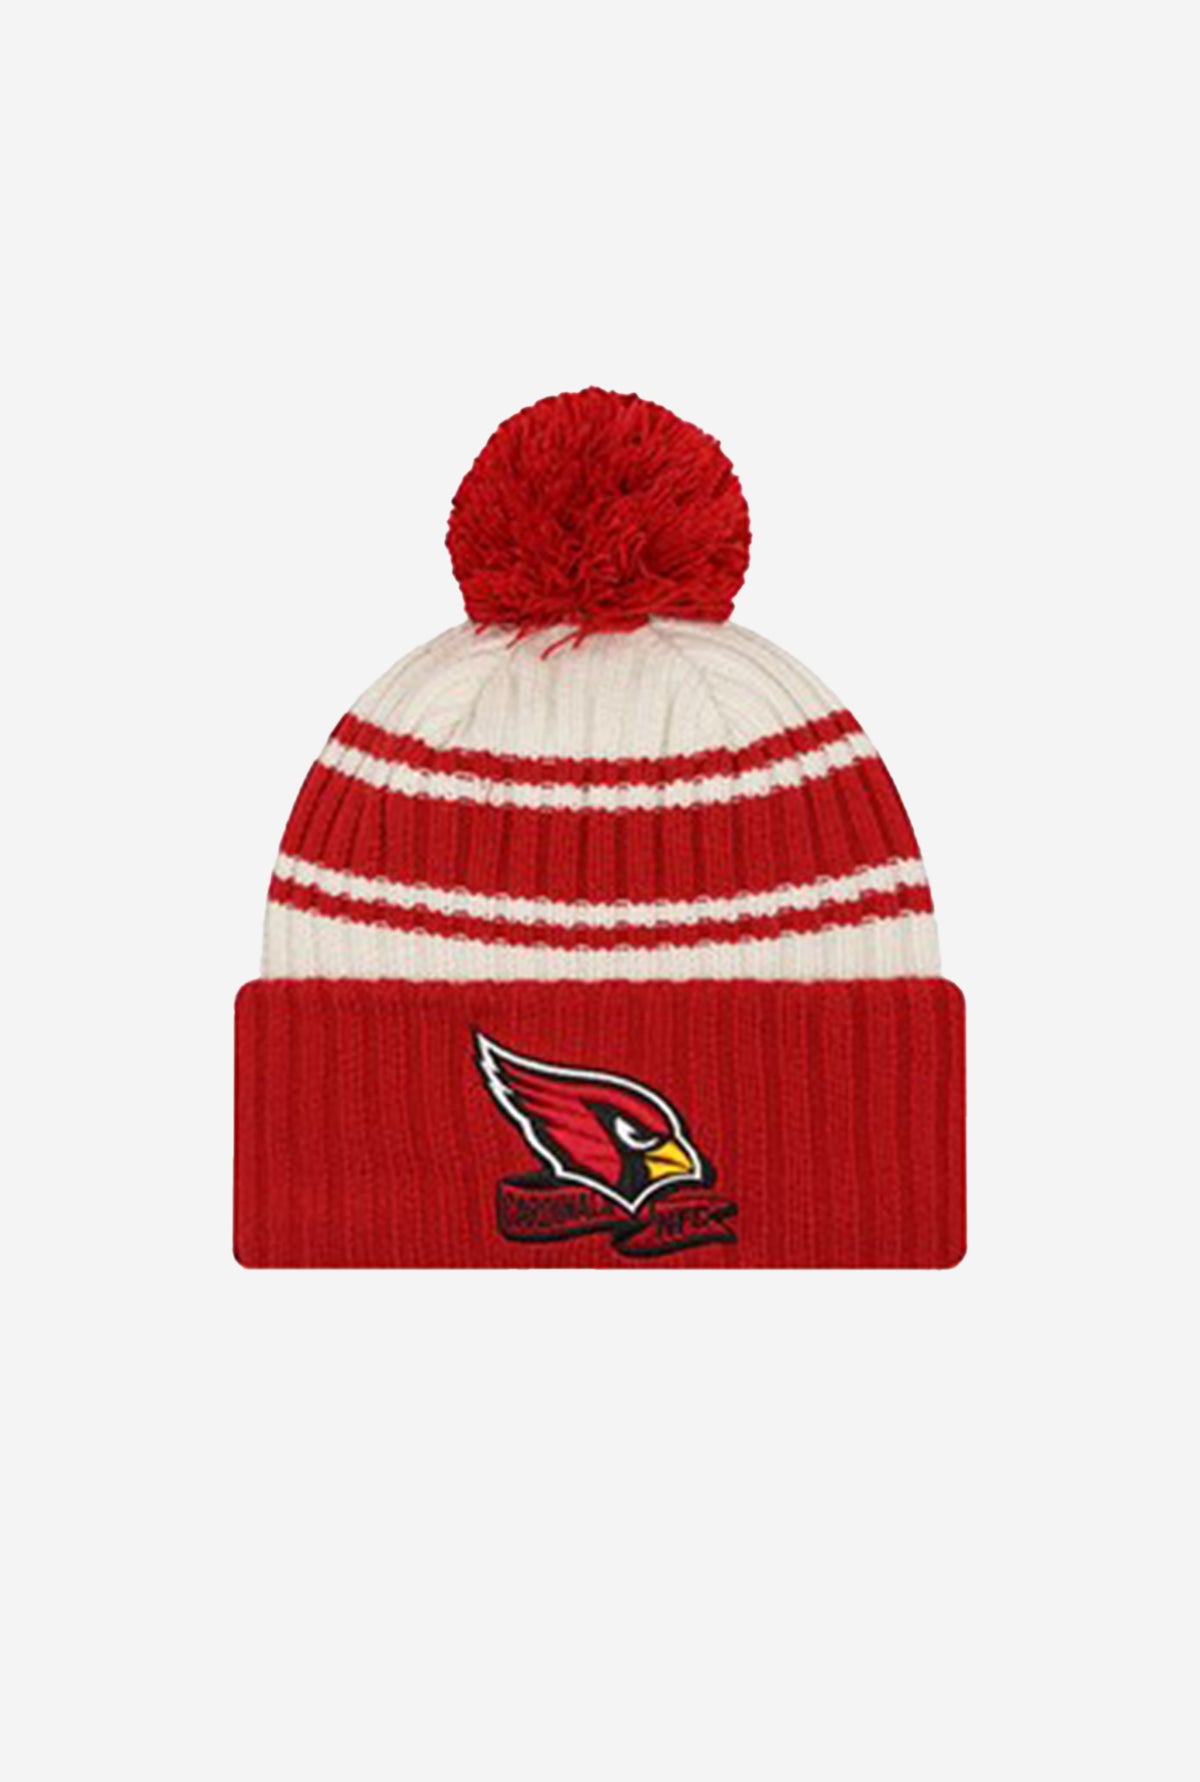 Arizona Cardinals Sideline Sport Knit Beanie